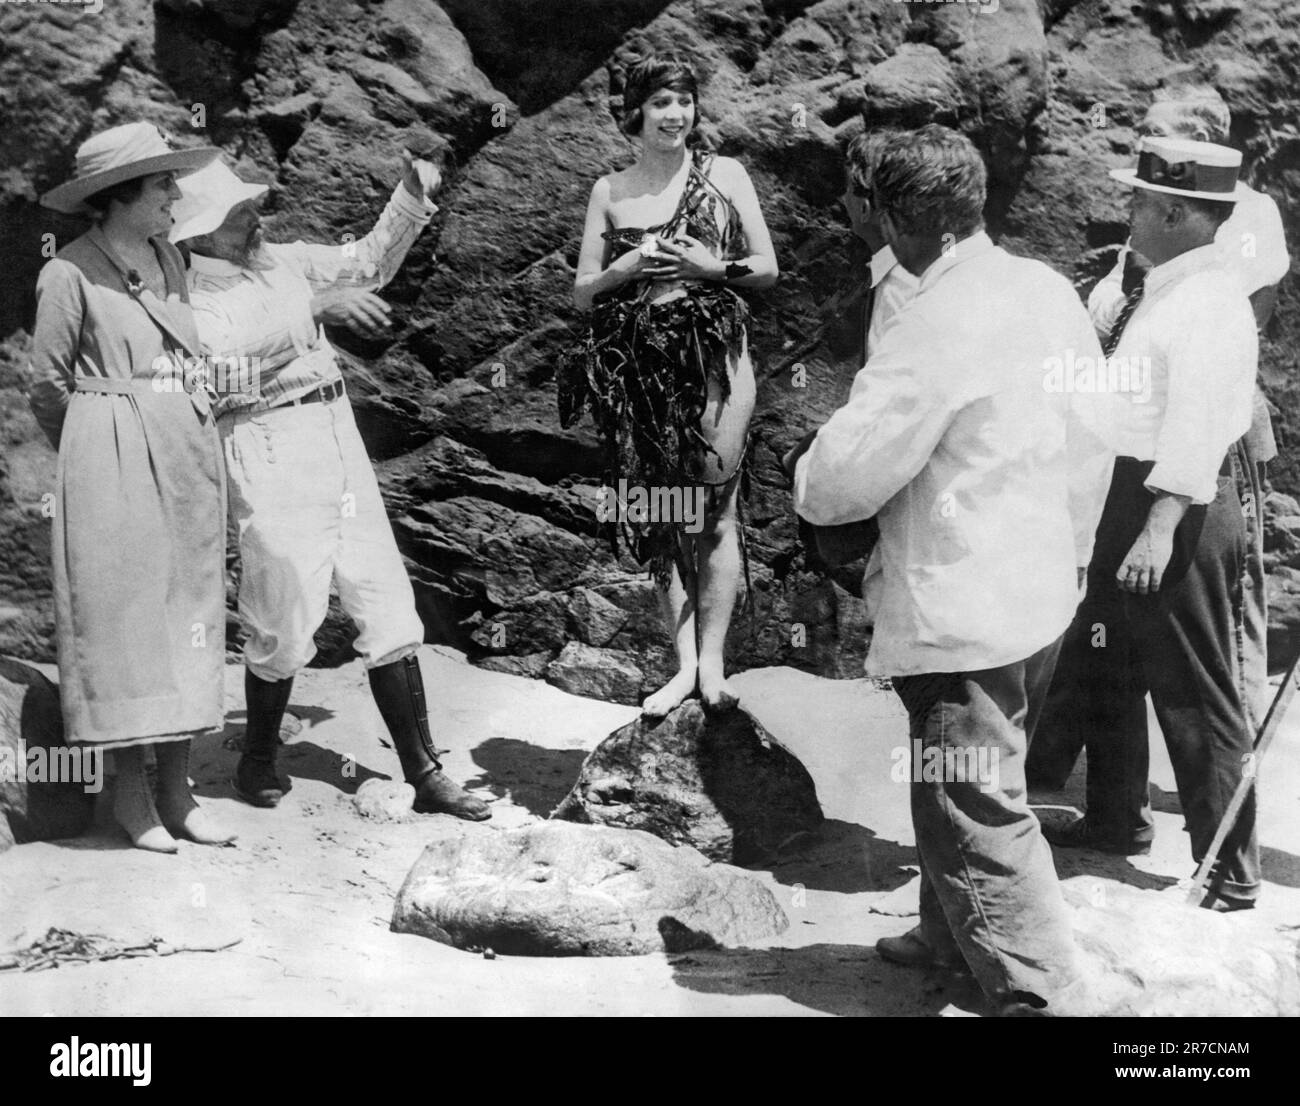 Laguna Beach, Californie: 22 juillet 1921 Miss Olive Ann Alcorn est couronnée le "plus beau modèle" par les artistes de Laguna Beach. Le peintre marin Frank Cuprien est le deuxième à partir de la gauche et Karl Yens, un autre artiste réputé, est au premier plan. Banque D'Images